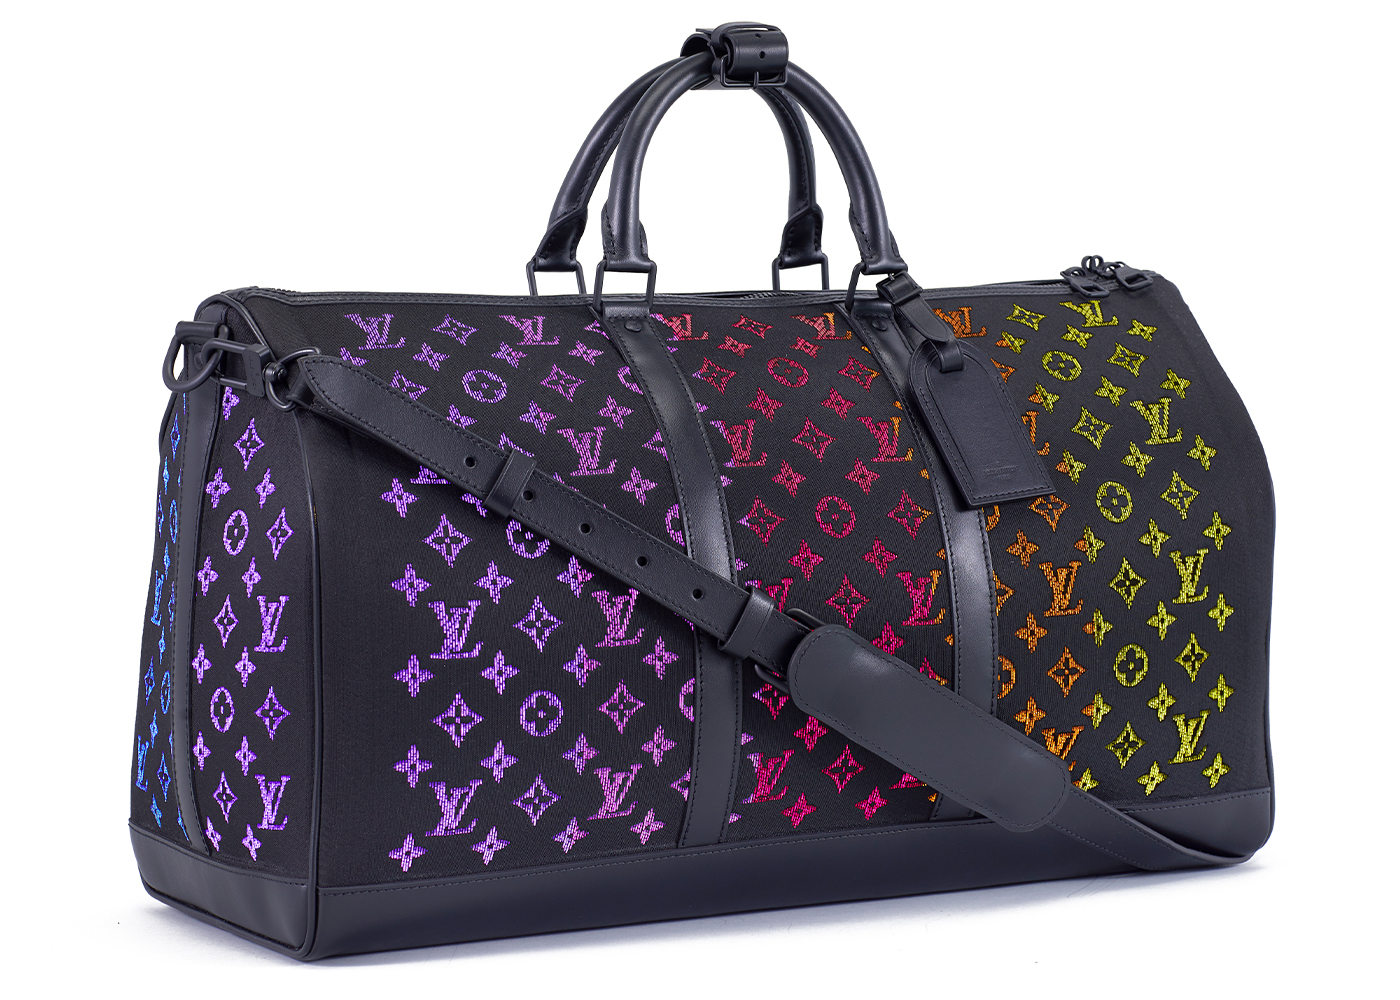 Watch DJ Khaleds 26k Louis Vuitton bag changes colour  Metro Video